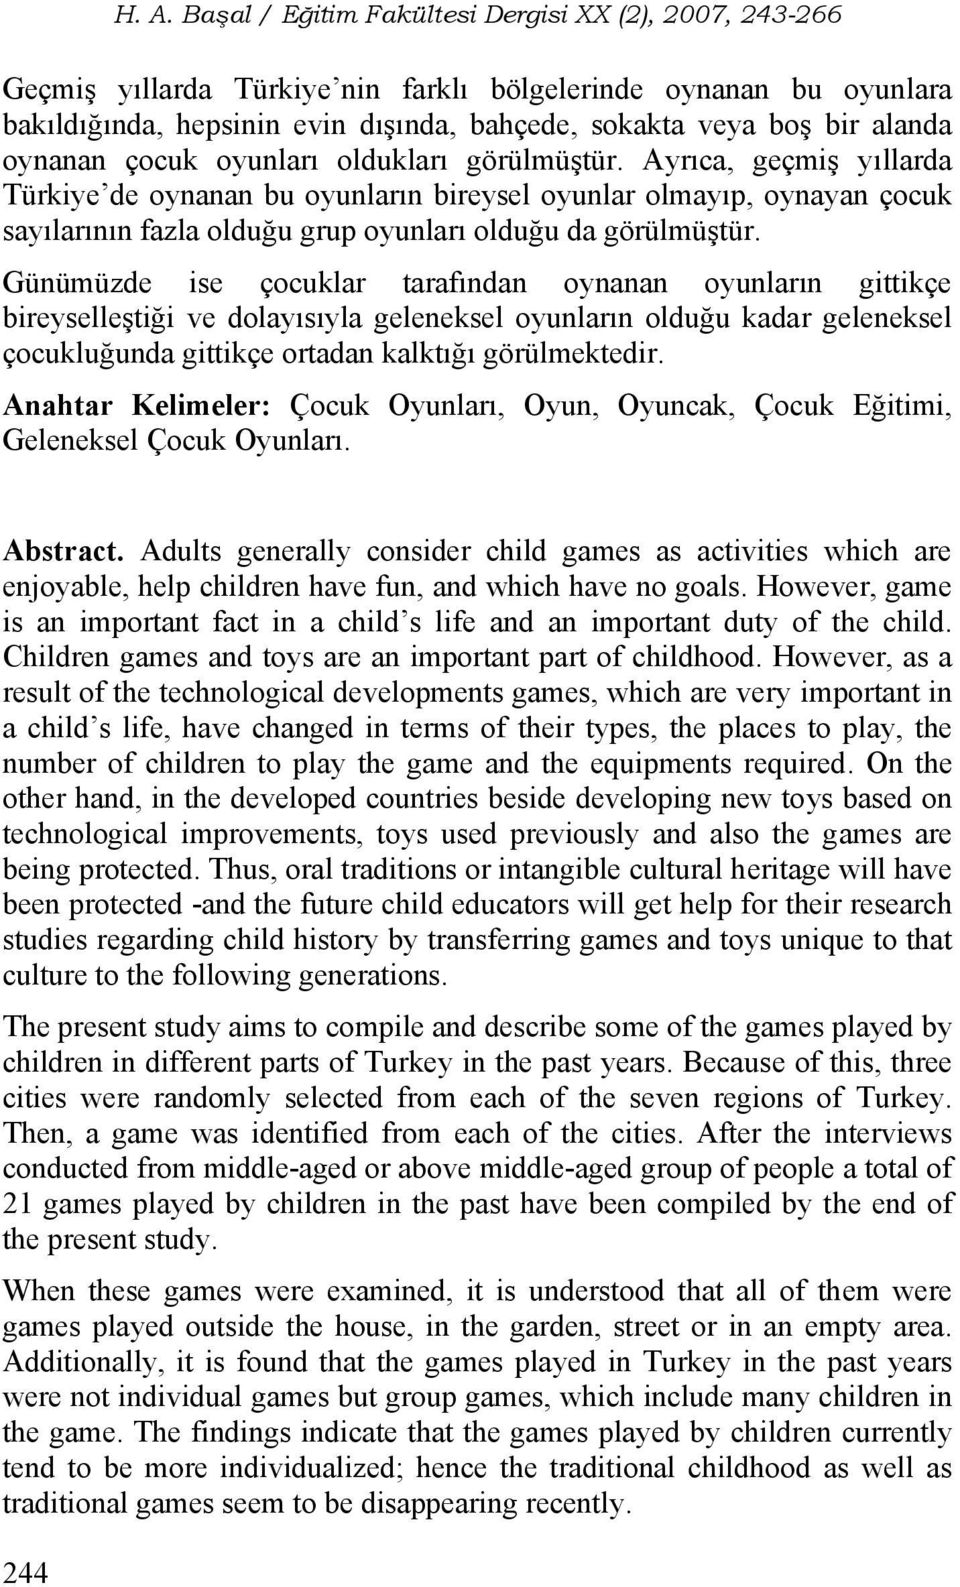 Günümüzde ise çocuklar tarafından oynanan oyunların gittikçe bireyselleştiği ve dolayısıyla geleneksel oyunların olduğu kadar geleneksel çocukluğunda gittikçe ortadan kalktığı görülmektedir.